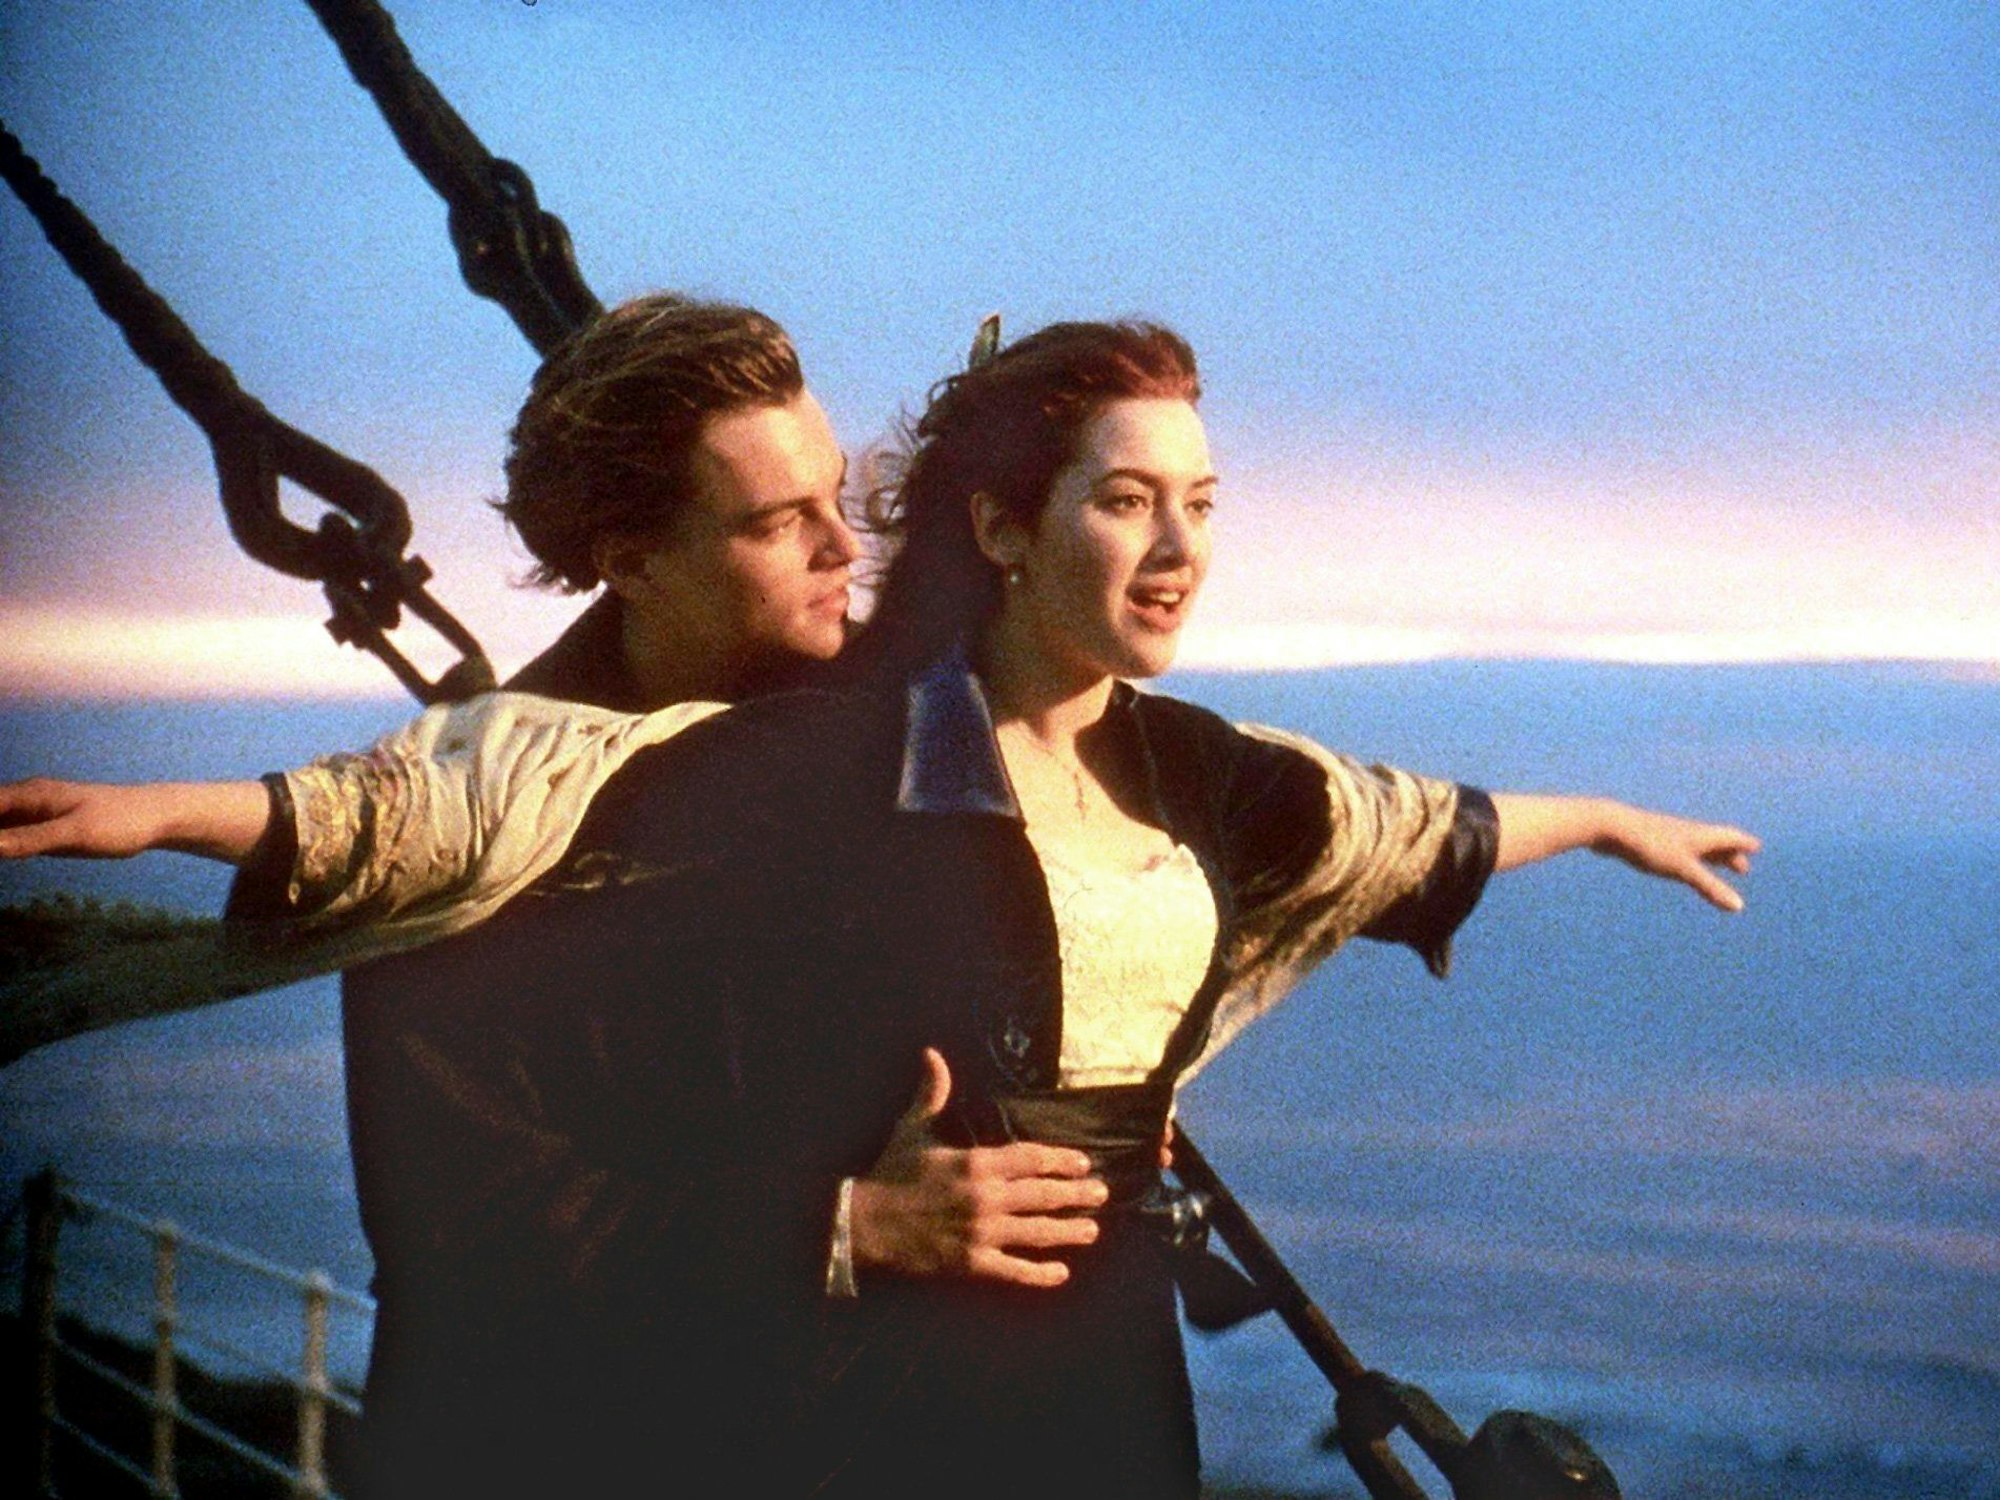 Leonardo DiCaprio und Kate Winslet in einer Filmszene von "Titanic" (1997)